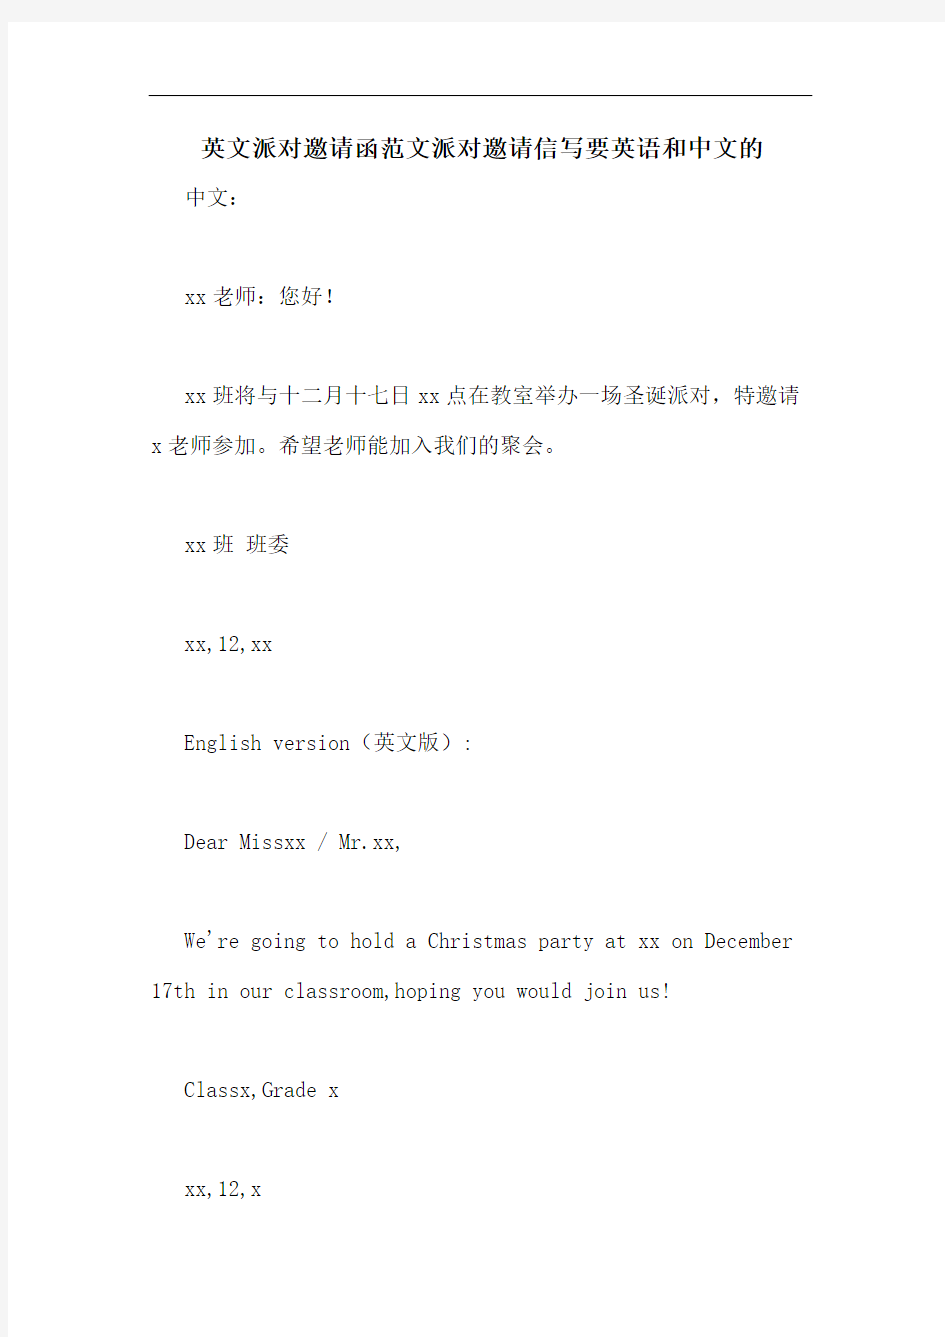 英文派对邀请函范文派对邀请信写要英语和中文的